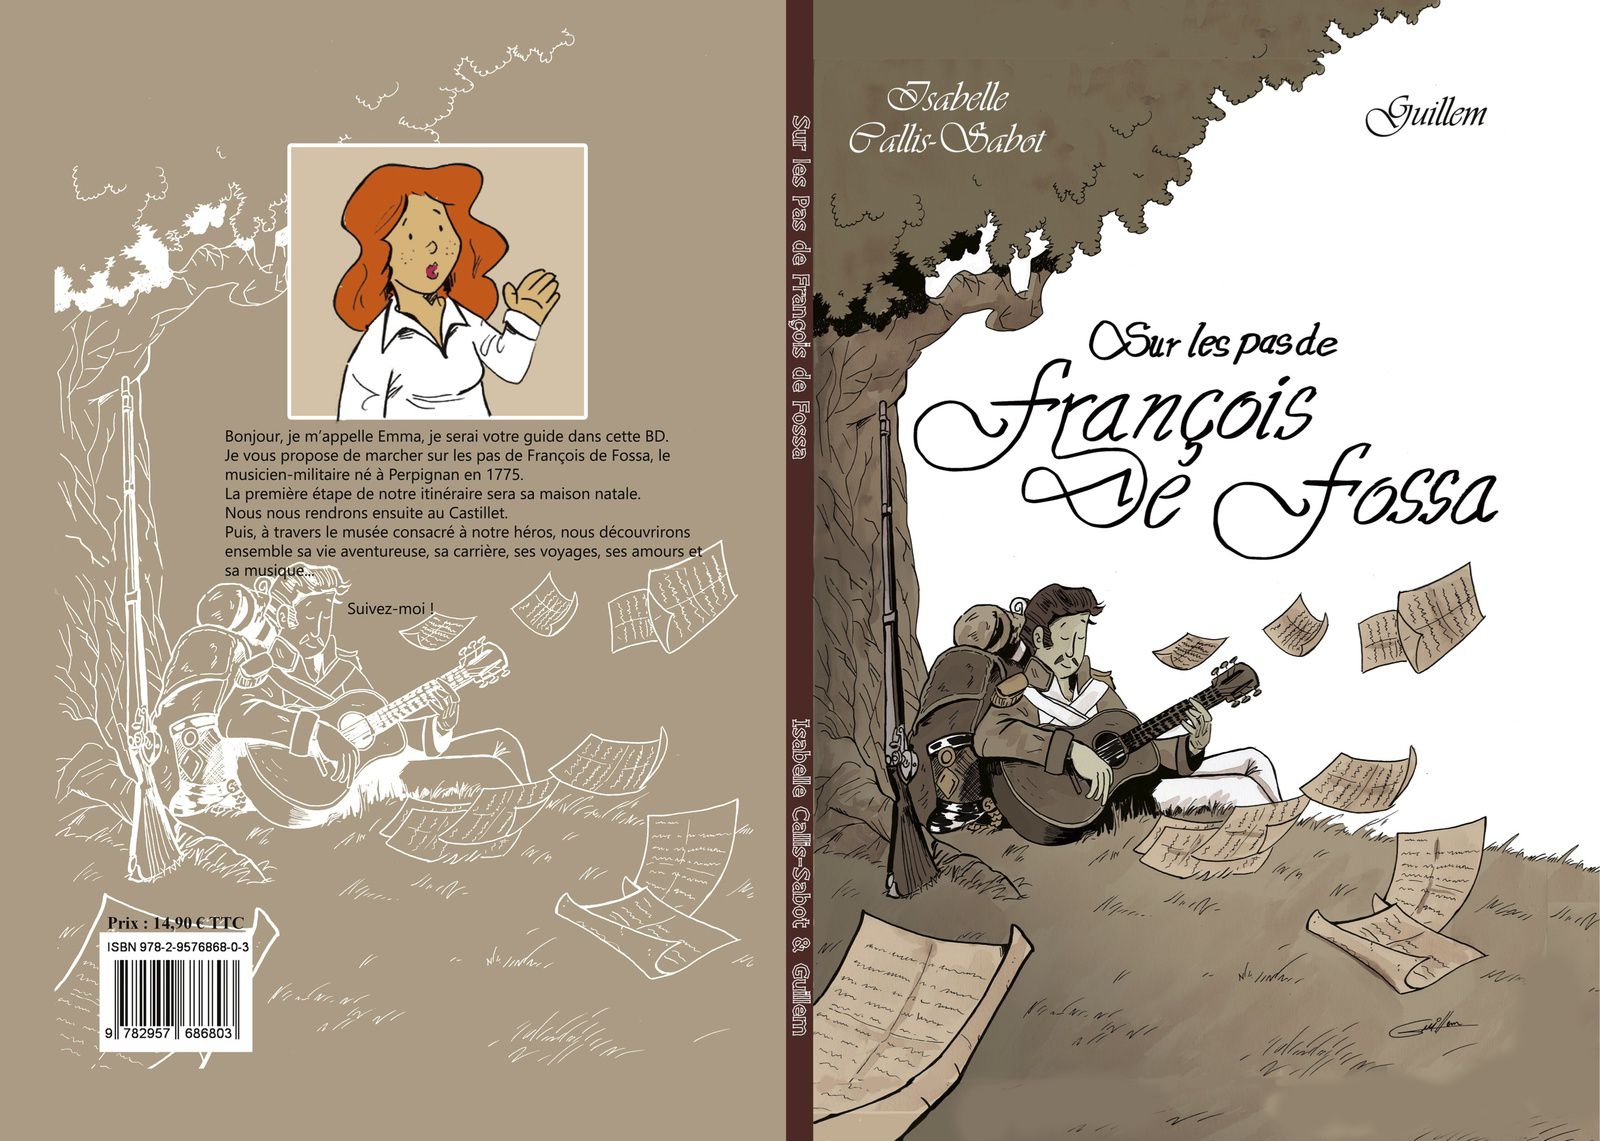 Couverture et premières pages de la BD - Guillem Sangenis, le dessinateur -